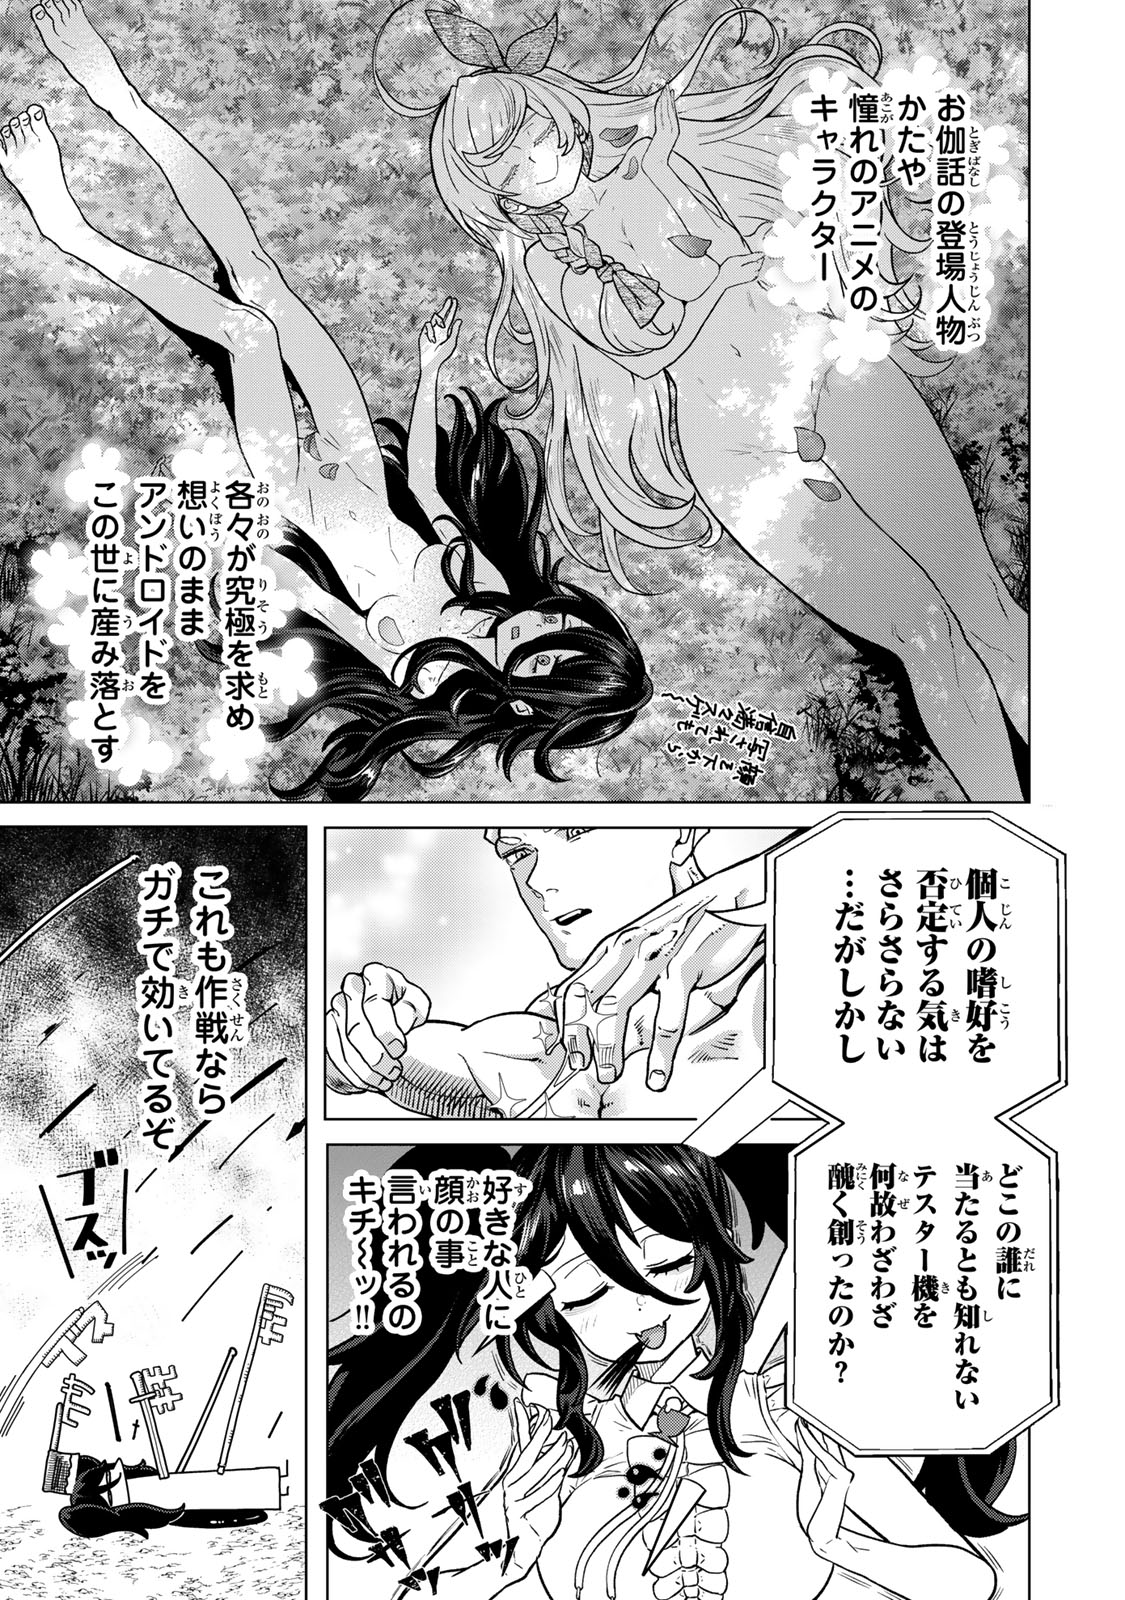 Yappa Ningen Yamete Seikai da wa - Chapter 3 - Page 15